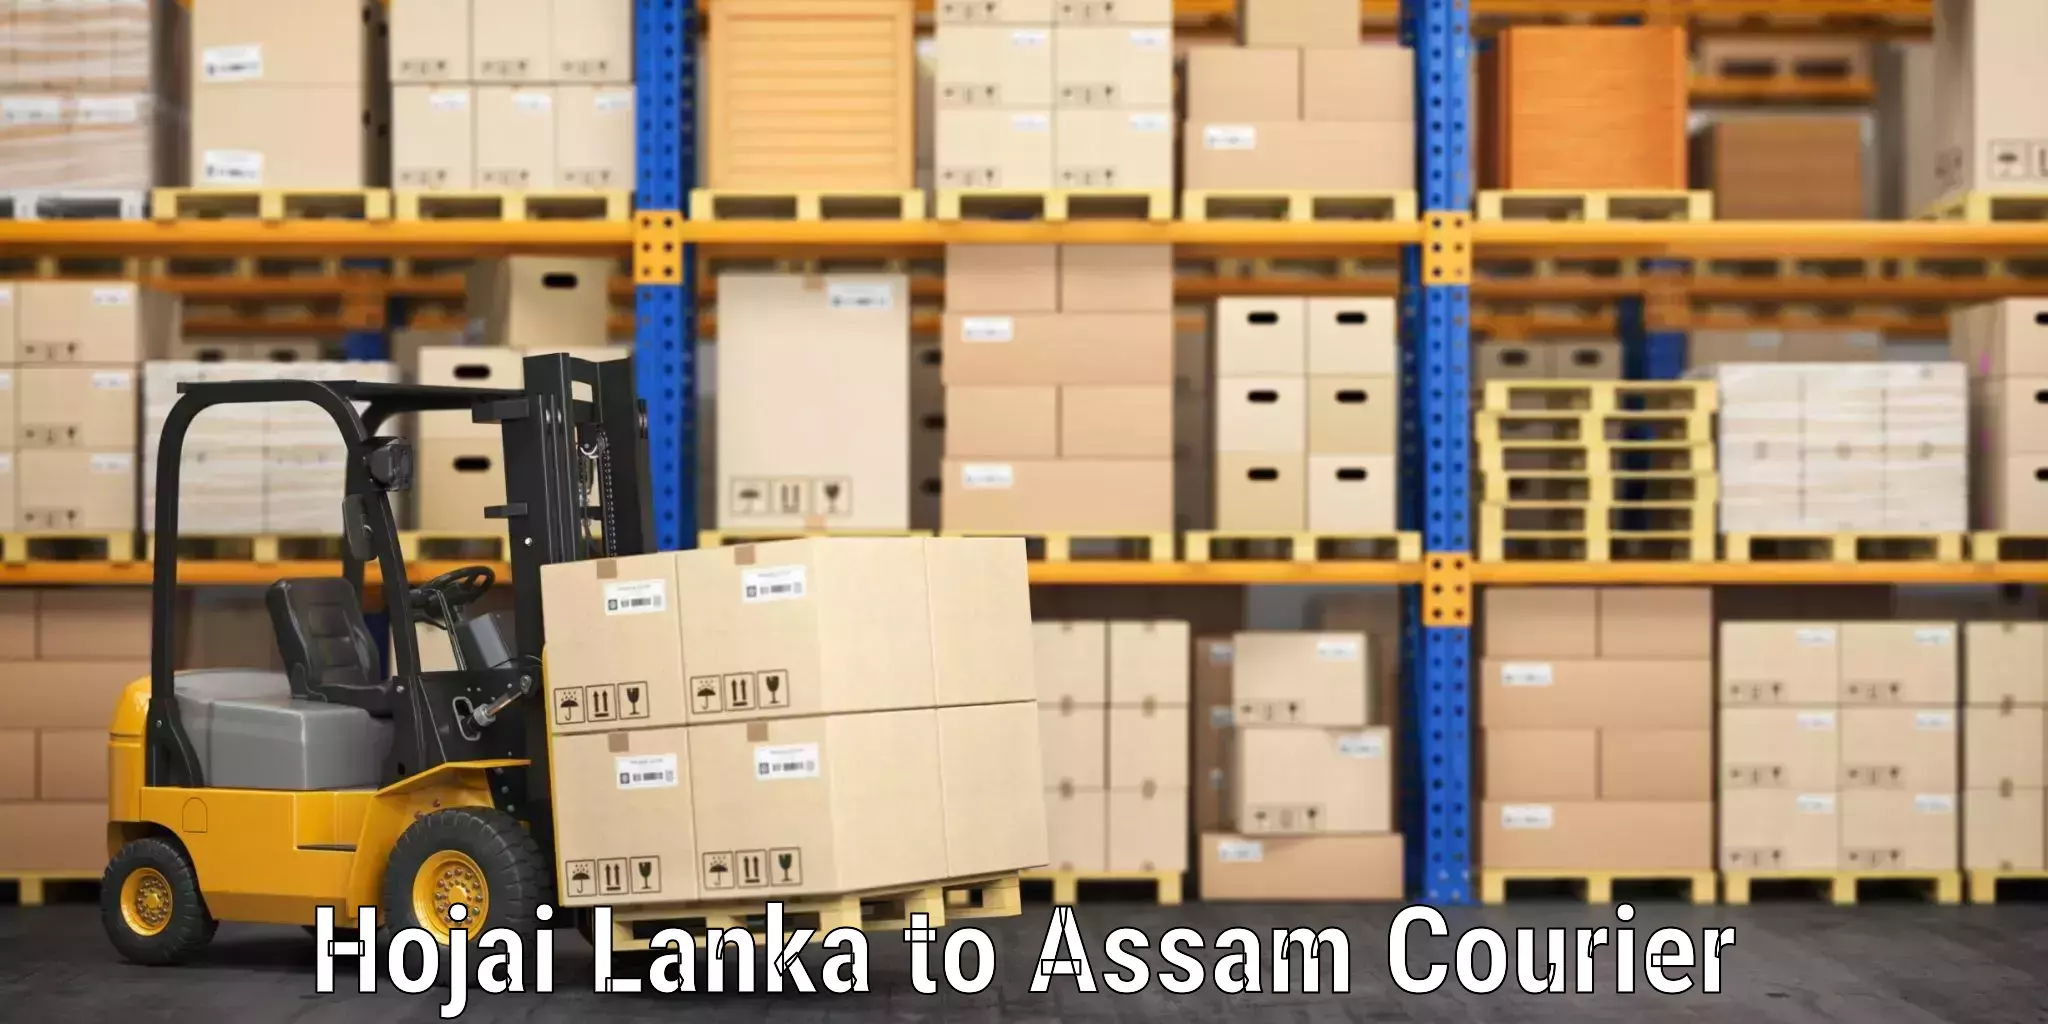 Hassle-free luggage shipping Hojai Lanka to Assam